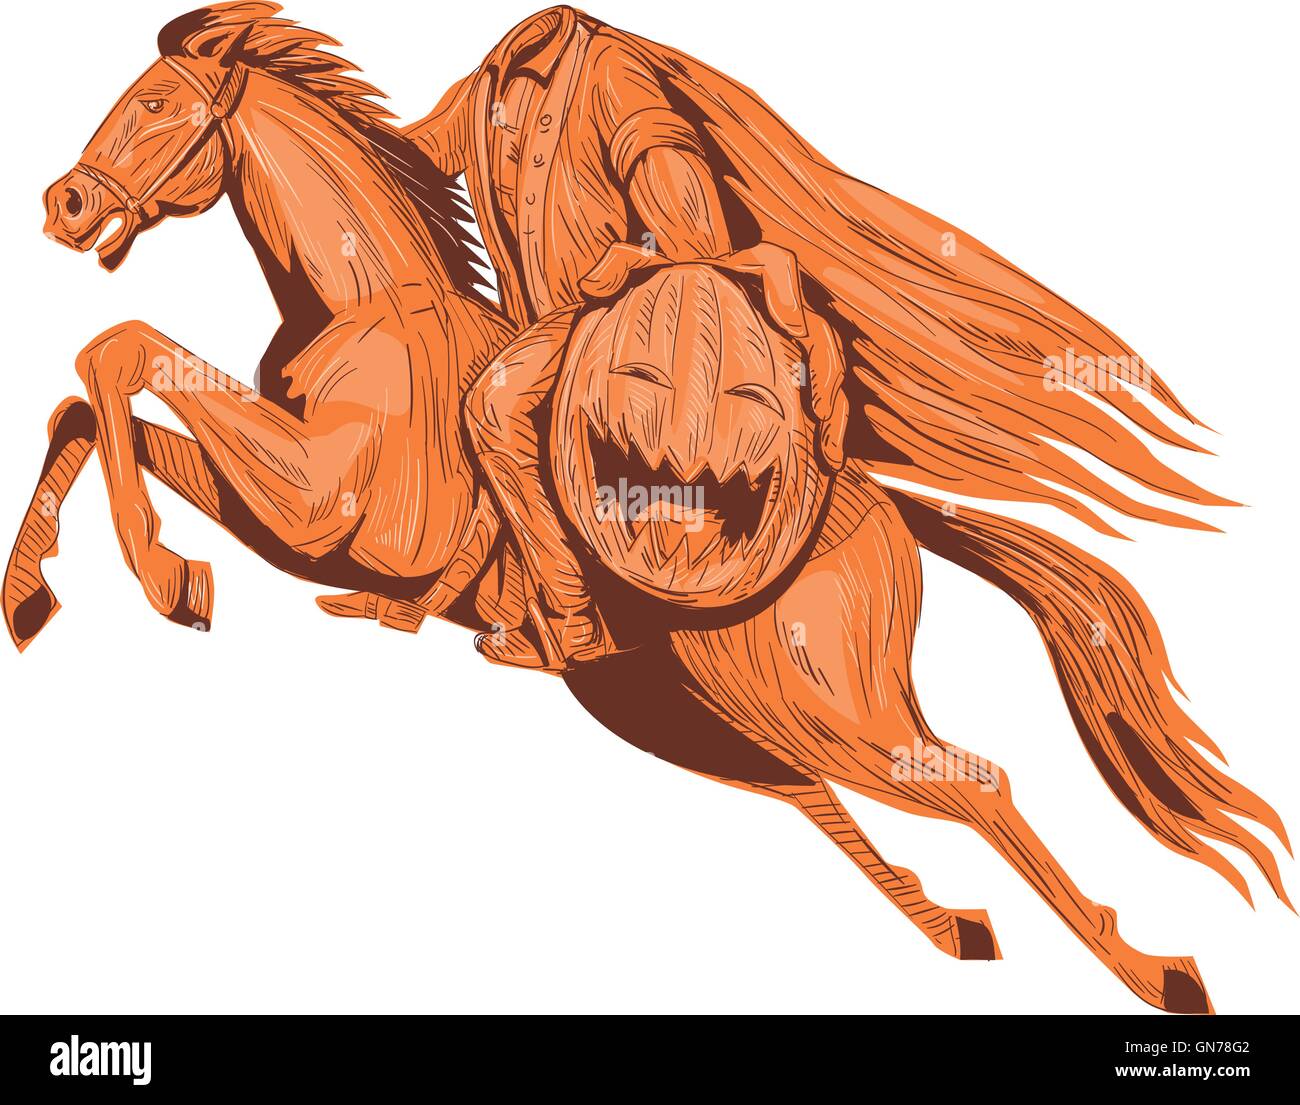 Croquis dessin illustration style de le cavalier sans tête ou galoper hessien de Sleepy Hollow à cheval et holding out Illustration de Vecteur